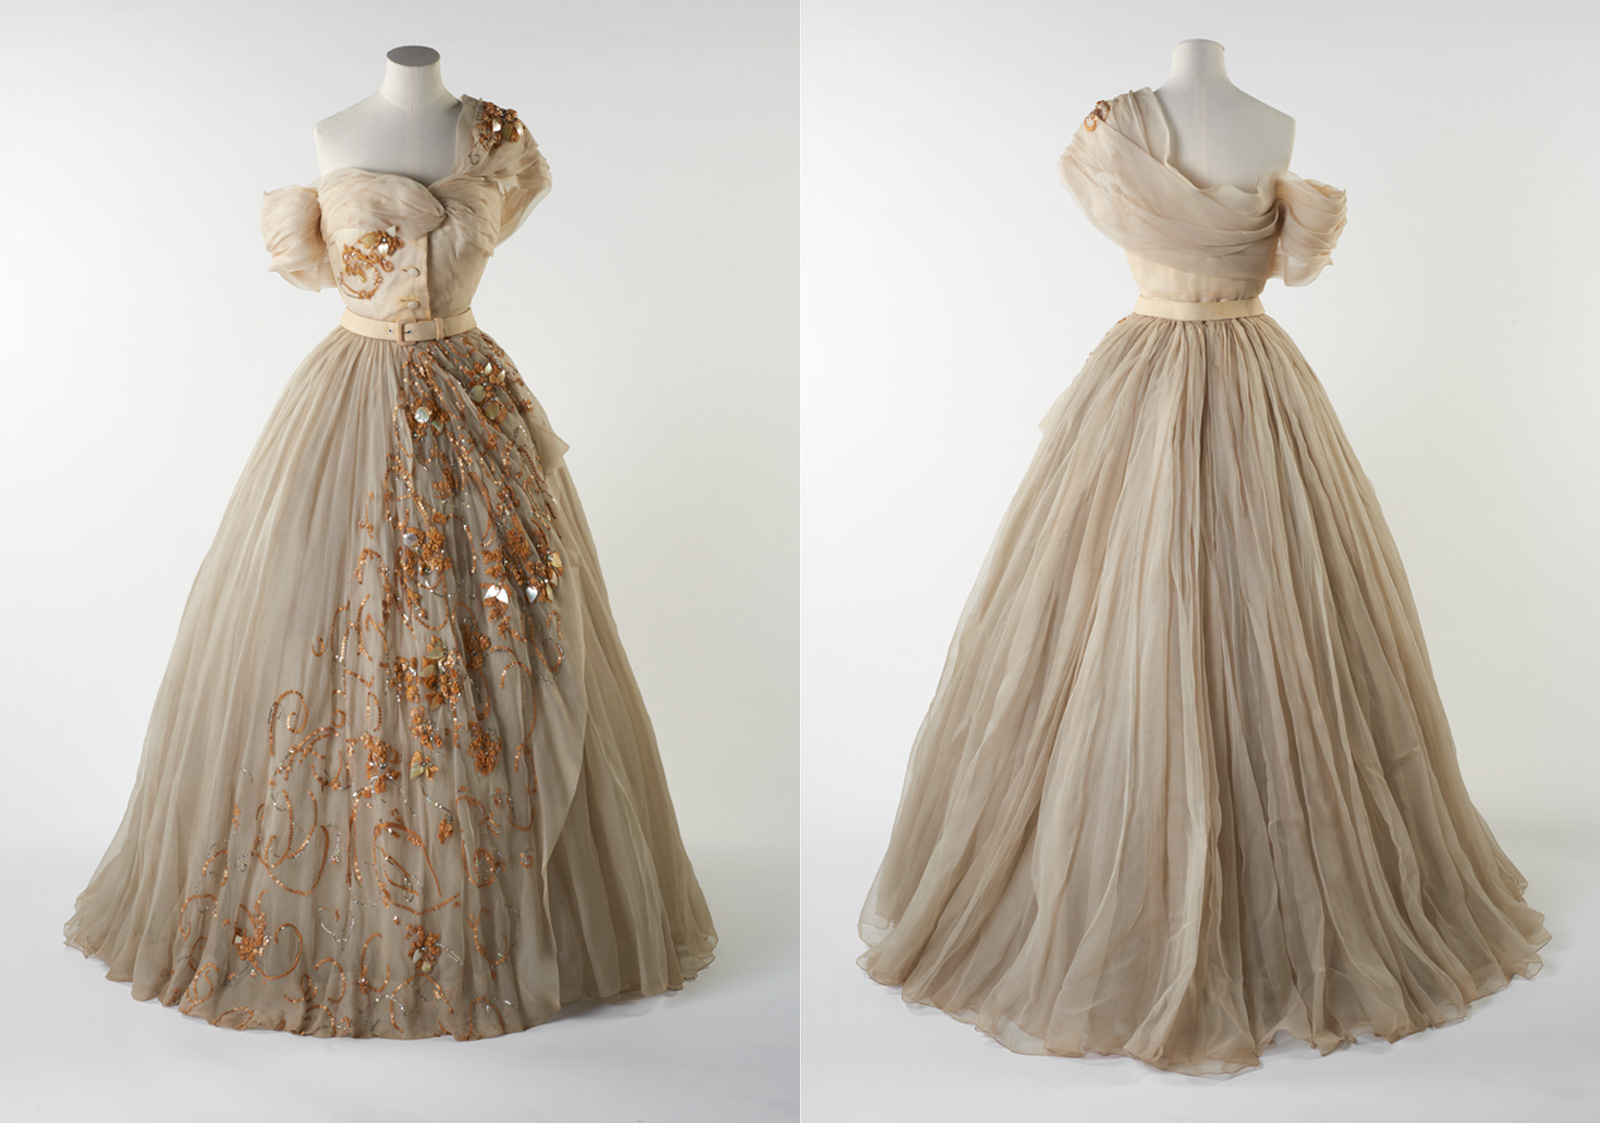 Dior dress worn by Princess Margaret